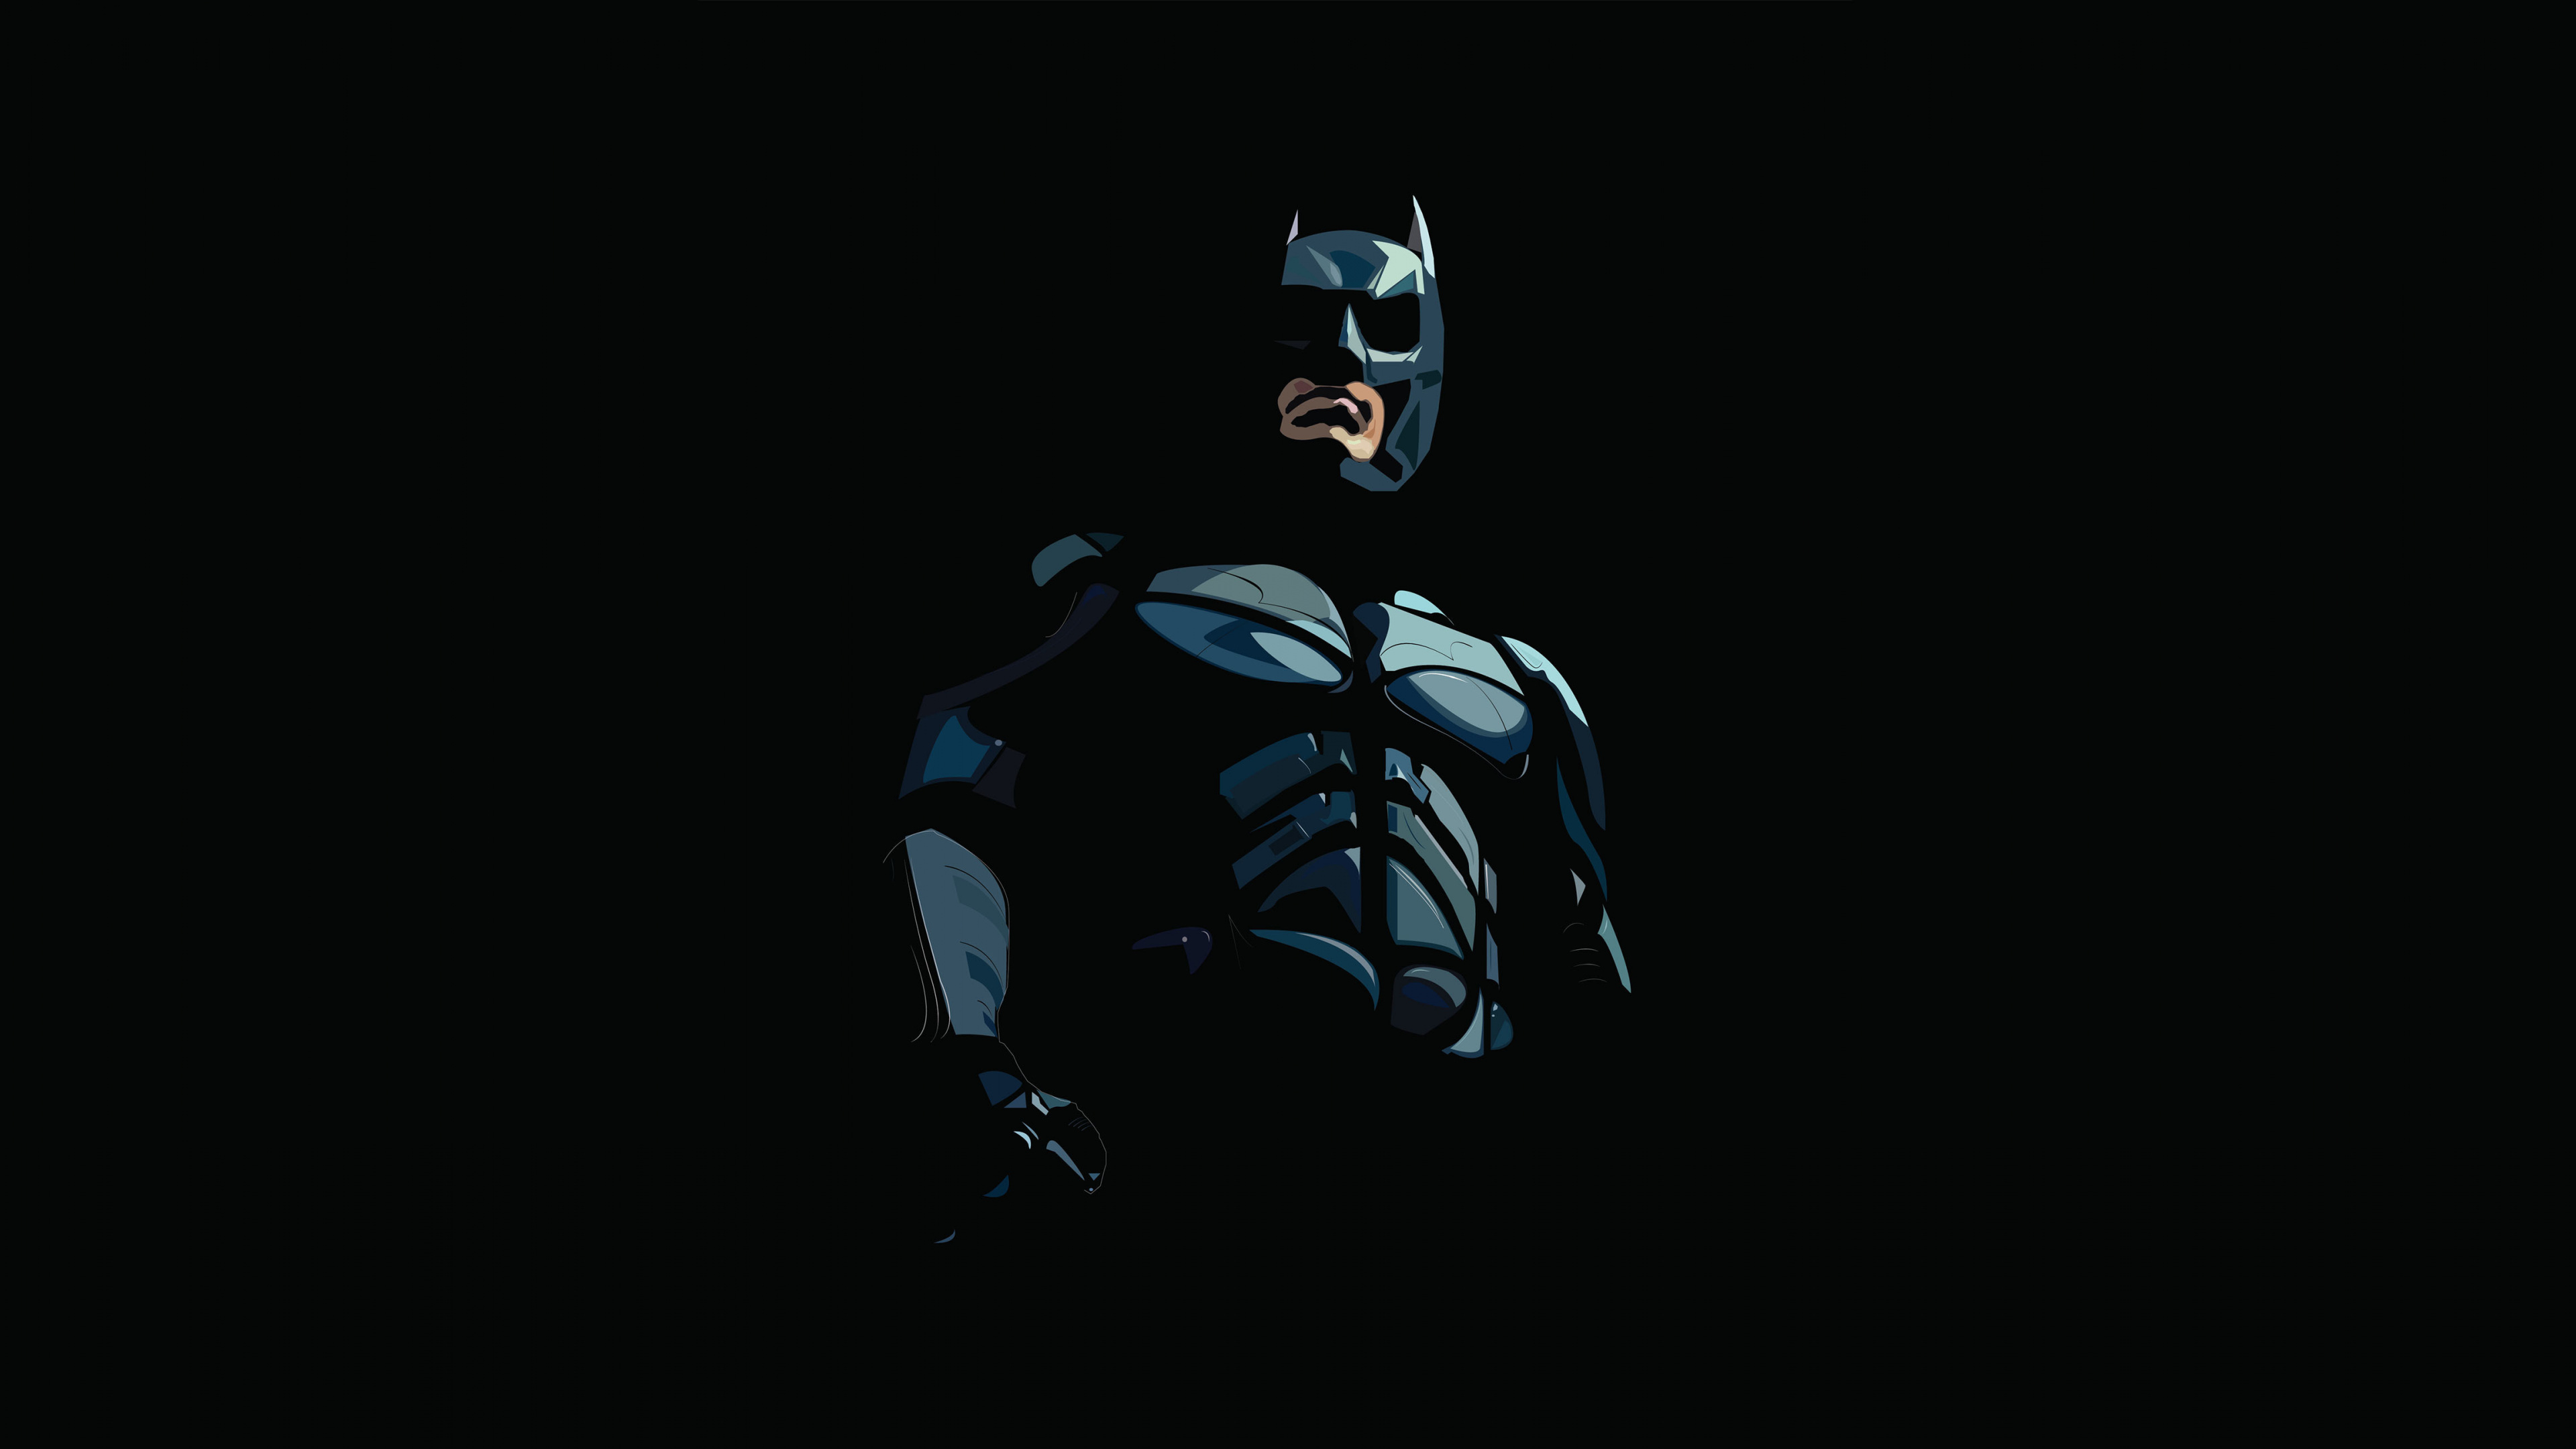 蝙蝠侠, Dc漫画, 图形设计, 画家, 虚构的人物 壁纸 3840x2160 允许